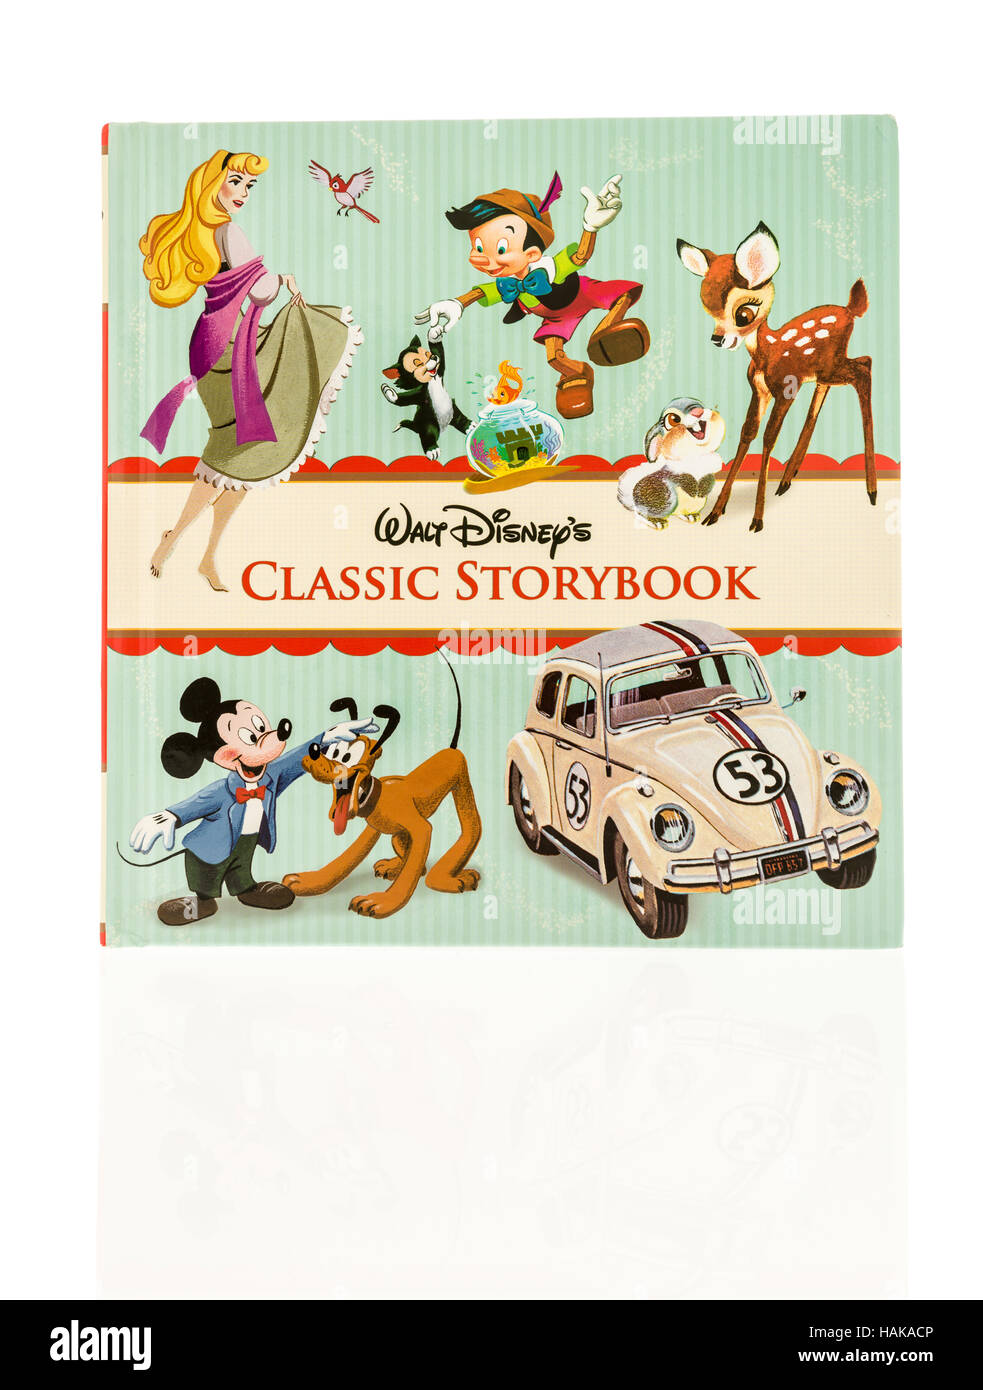 Winneconne, WI - 30 Novembre 2016: Walt Disney classic storybook containgin storie dei classici personaggi Disney isolato su un background. Foto Stock